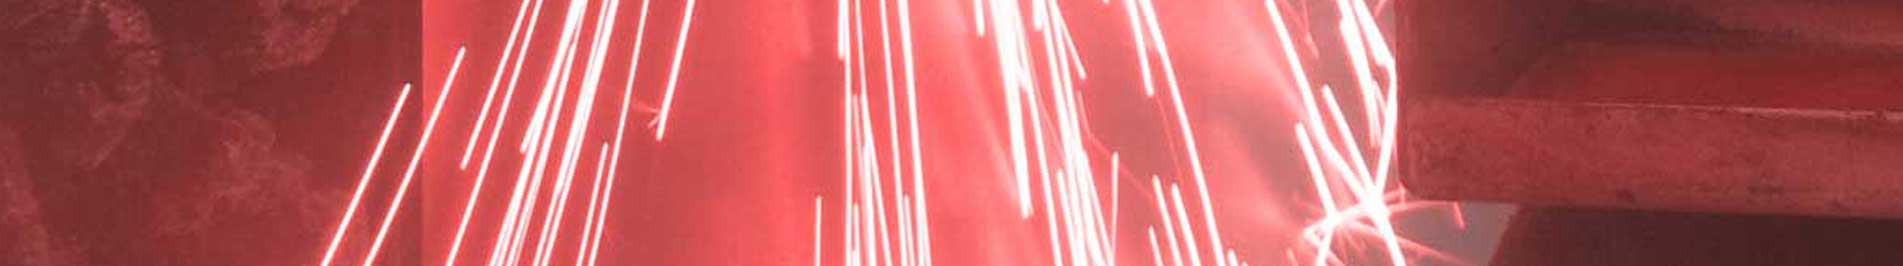 Wycinanie laserowe - cięcie blach laserem